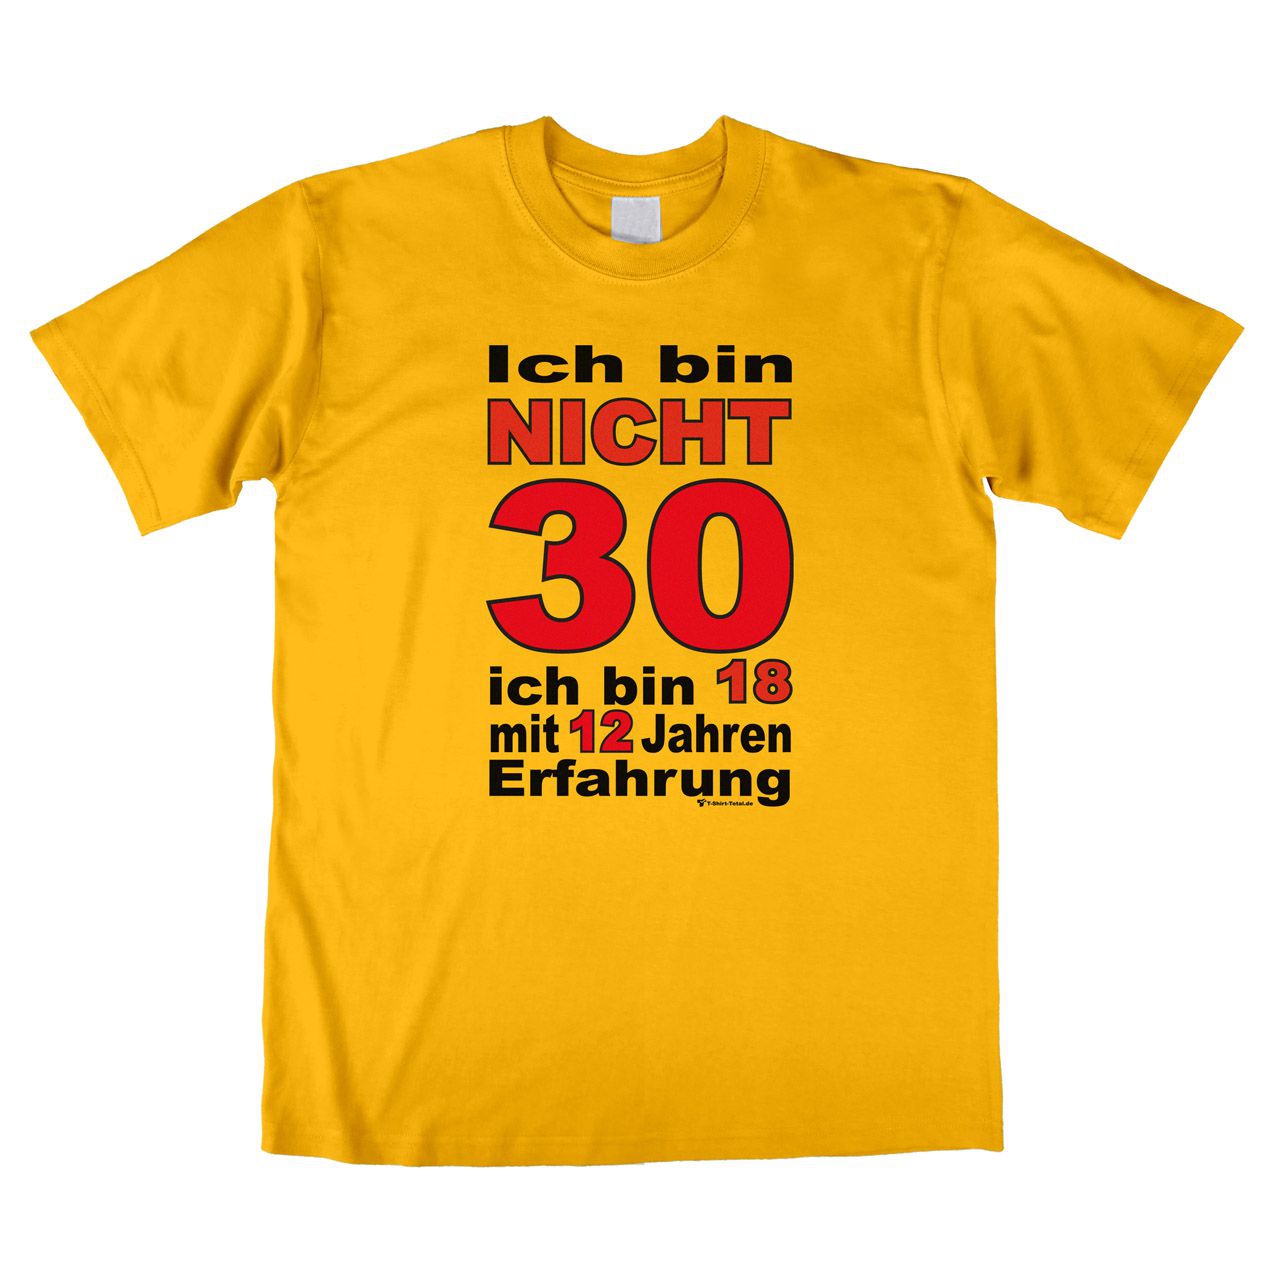 Bin nicht 30 Unisex T-Shirt gelb Extra Large